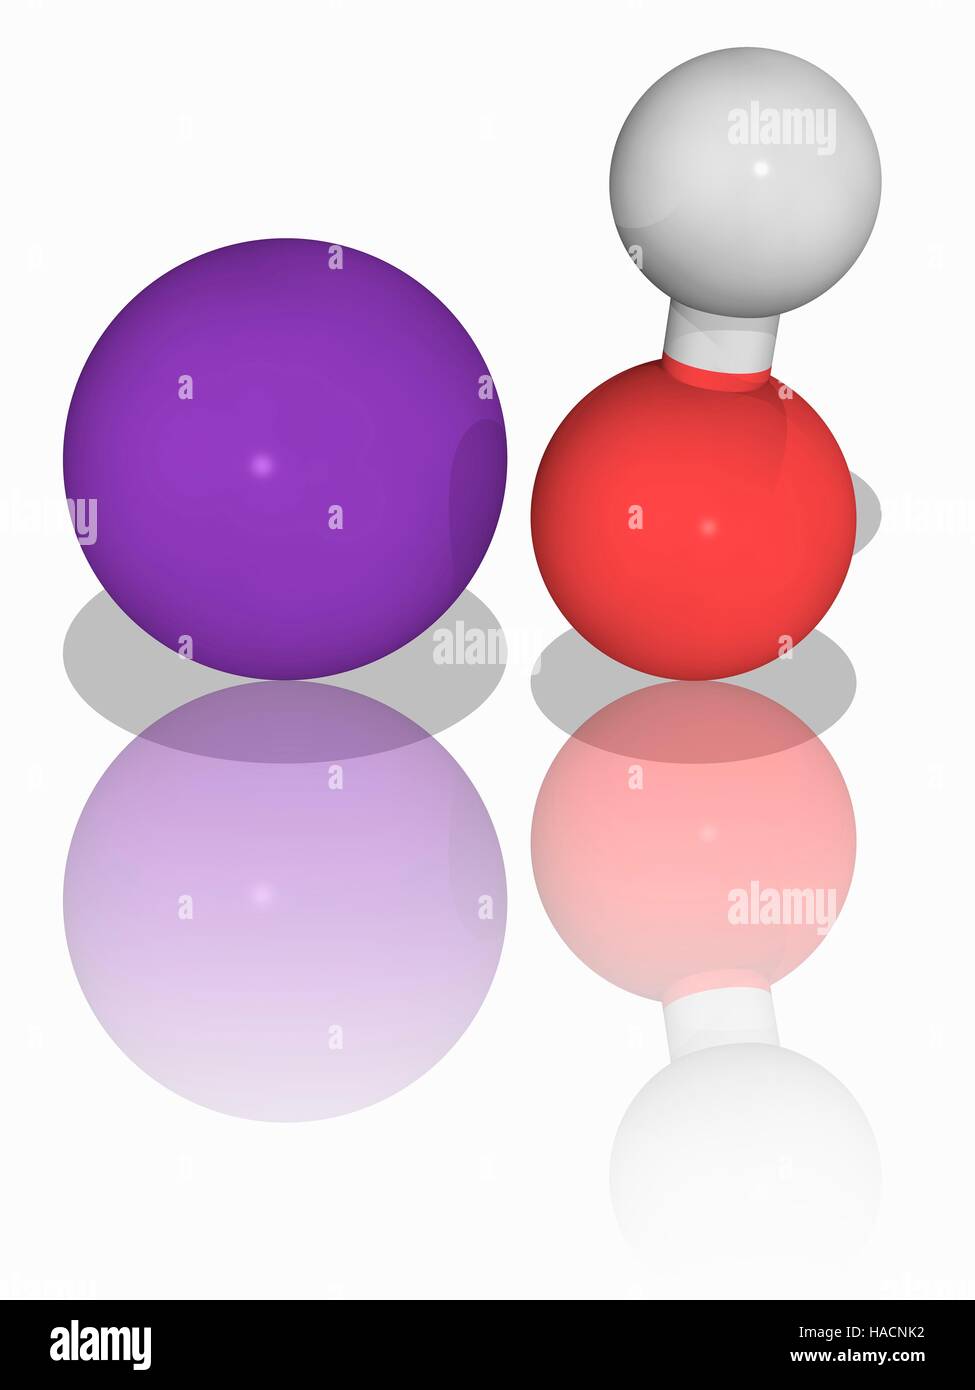 Hidróxido de potasio. Modelo molecular de los compuestos inorgánicos de  hidróxido de potasio (KOH), utilizado como un precursor a la mayoría de  jabones suaves y líquidos, así como de numerosos productos químicos